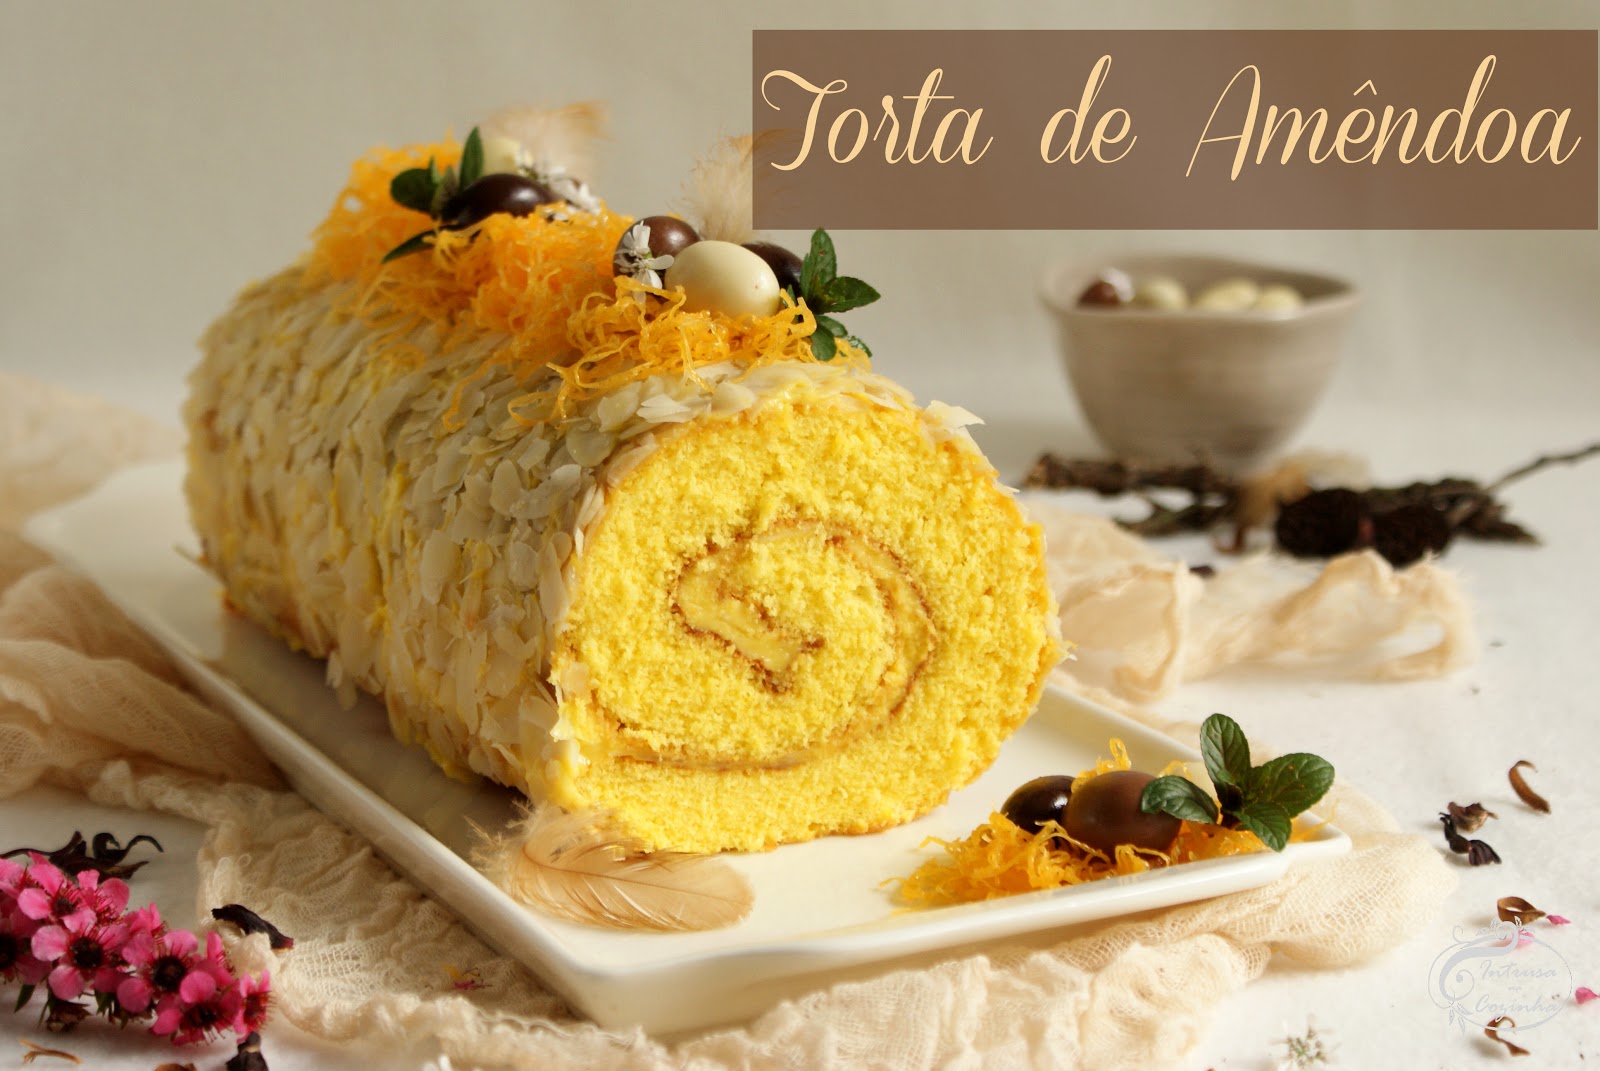 Torta de Amêndoa (Almond Cake Roll)